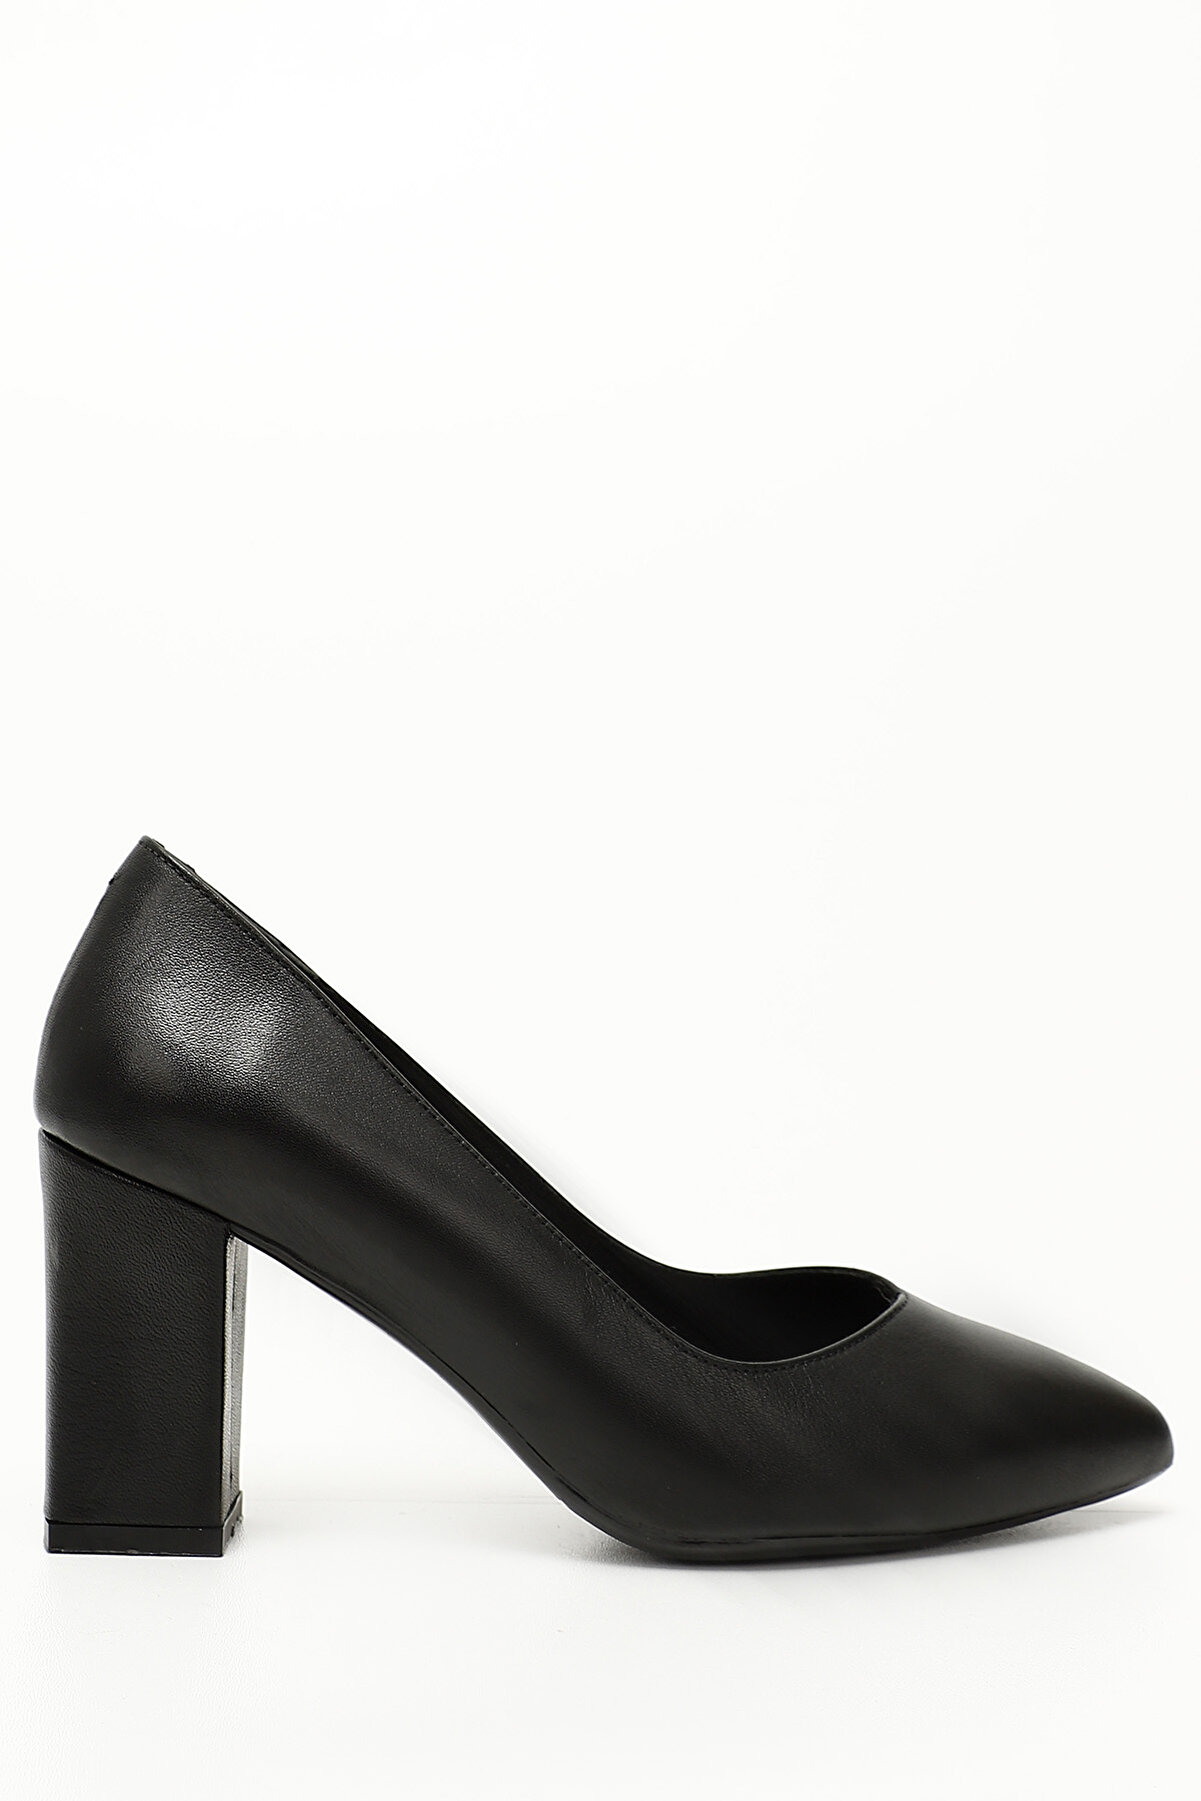 GÖNDERİ(R) Siyah Gön Hakiki Deri Sivri Burun Yüksek Kalın Topuklu Kadın Ayakkabı 24171